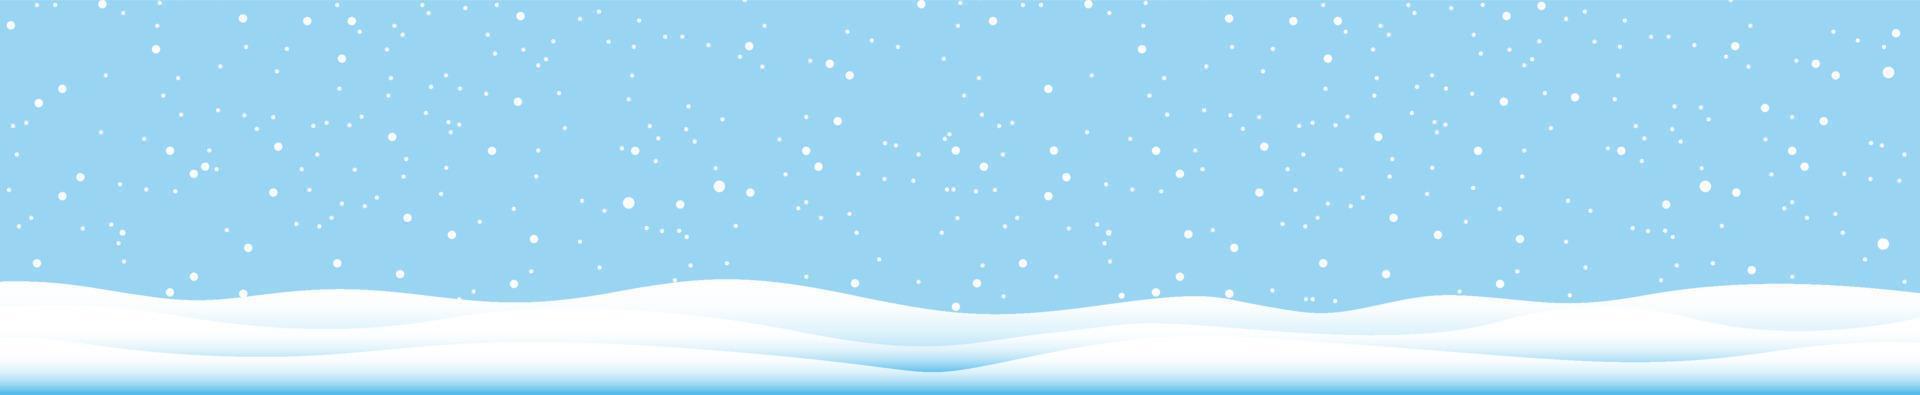 sneeuwvlokken en winter achtergrond, winterlandschap, horizontale banner, vectorillustratie. vector